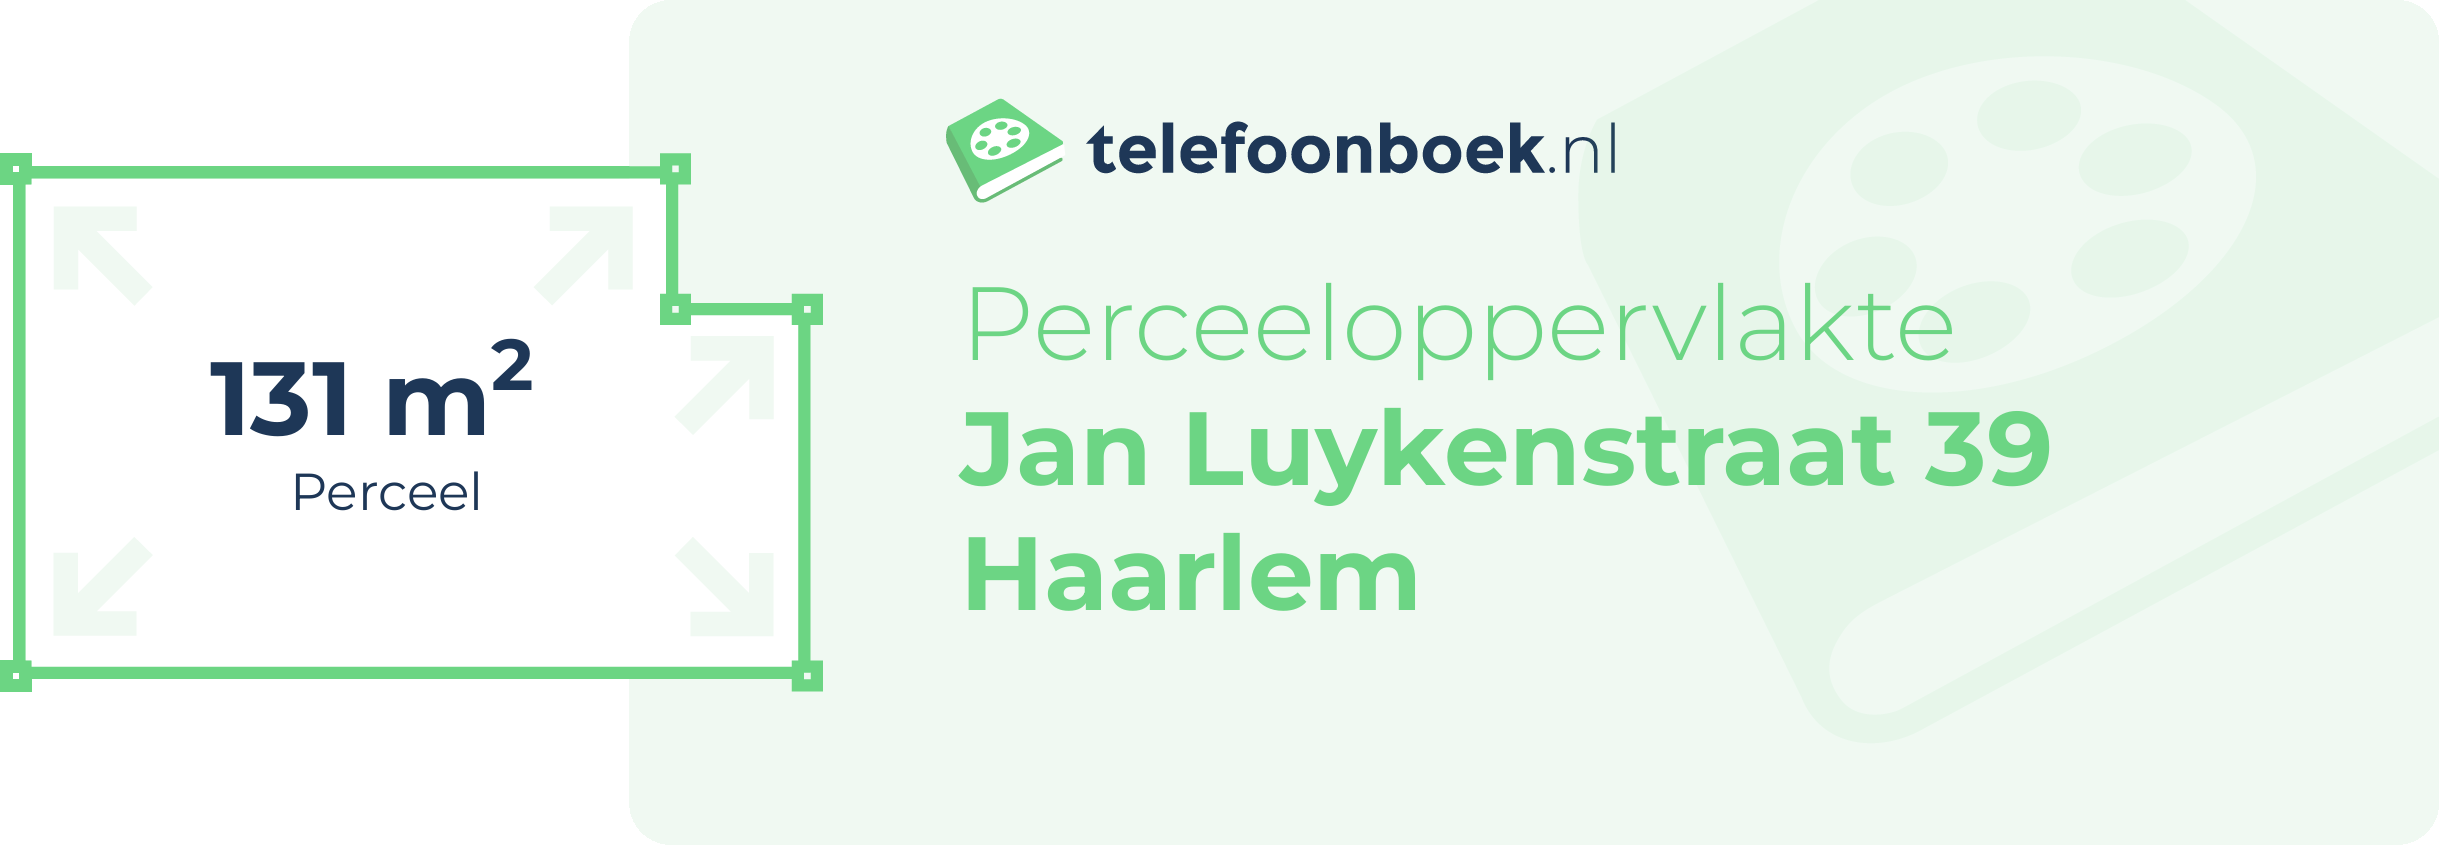 Perceeloppervlakte Jan Luykenstraat 39 Haarlem